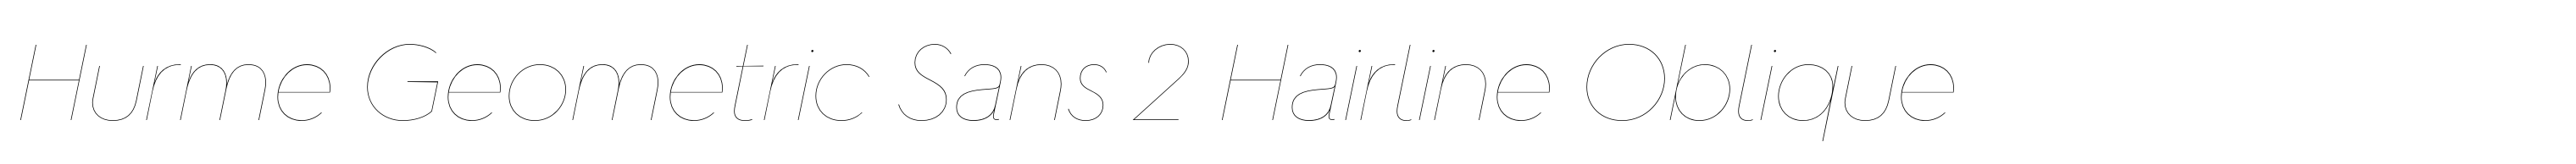 Hurme Geometric Sans 2 Hairline Oblique